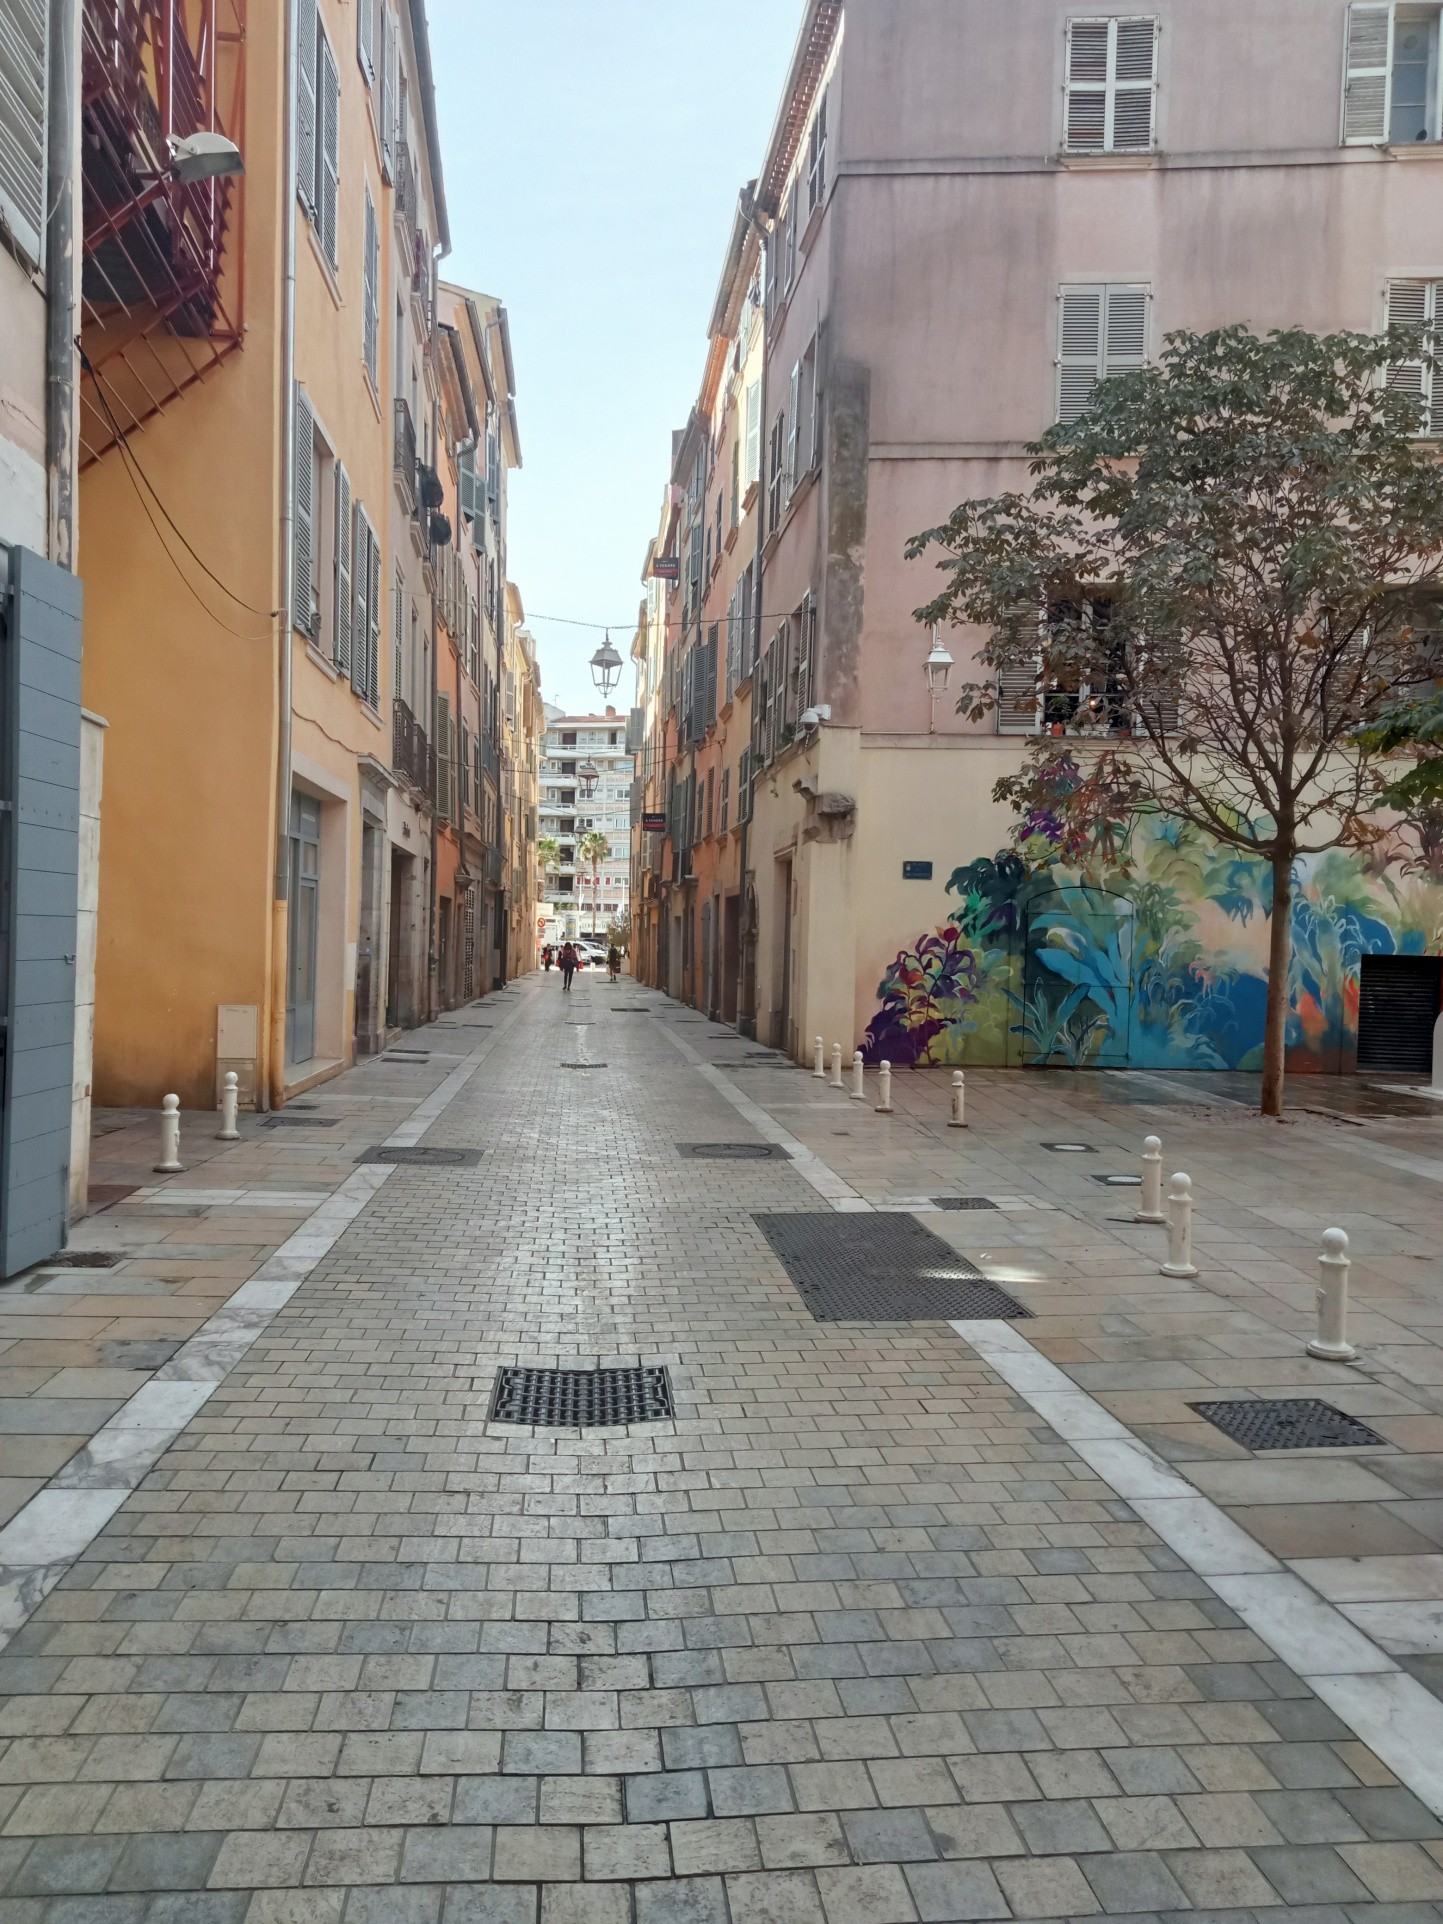 Location Bureau / Commerce à Toulon 2 pièces